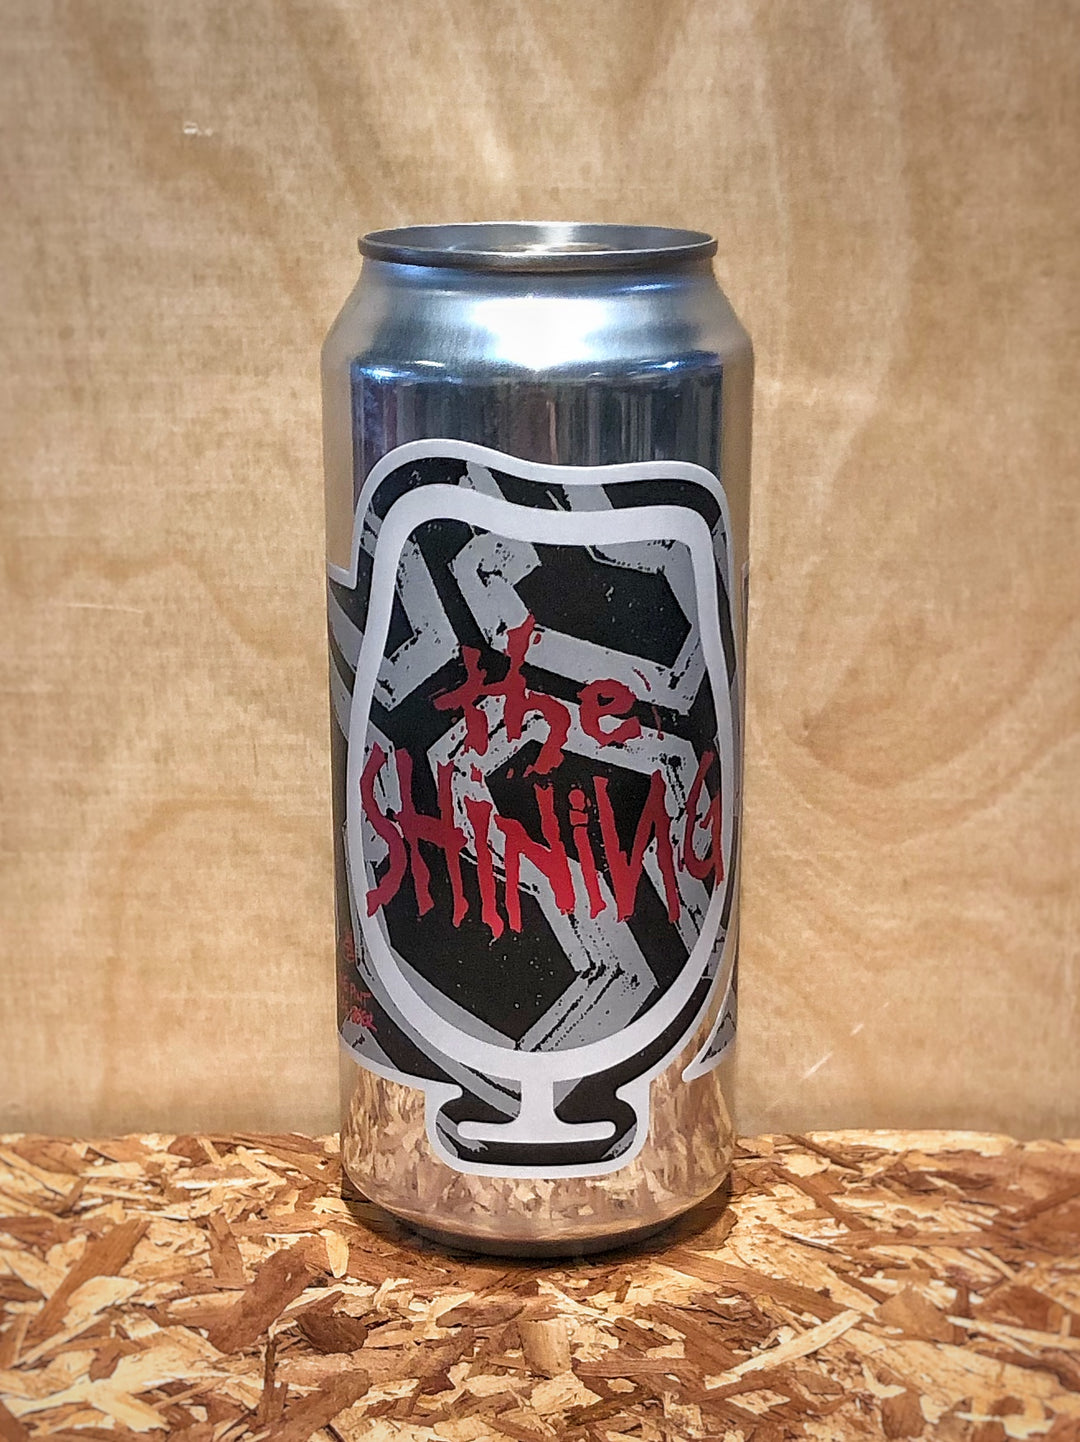 Foam Brewers 'The Shining' Double India Pale Ale (Burlington, VT)